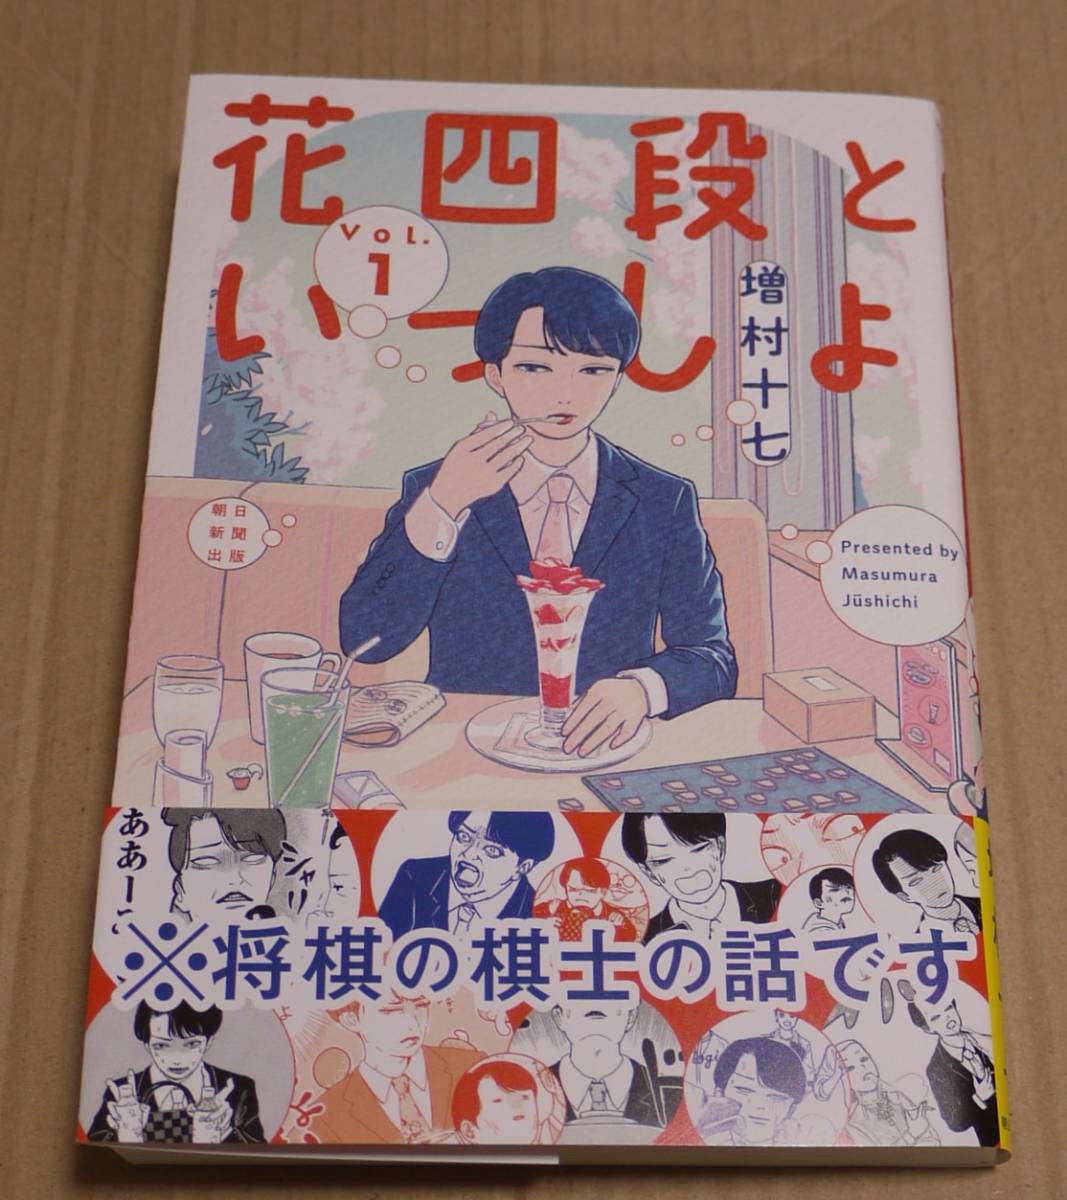 1 Band von Hana Yodan to Issho (Jushichi Masumura) mit handgezeichneten Illustrationen und Autogrammen. Inklusive Postkarte. Klicken Sie auf Postversand (185 Yen) inklusive., Comics, Anime-Waren, Zeichen, Handgezeichnetes Gemälde